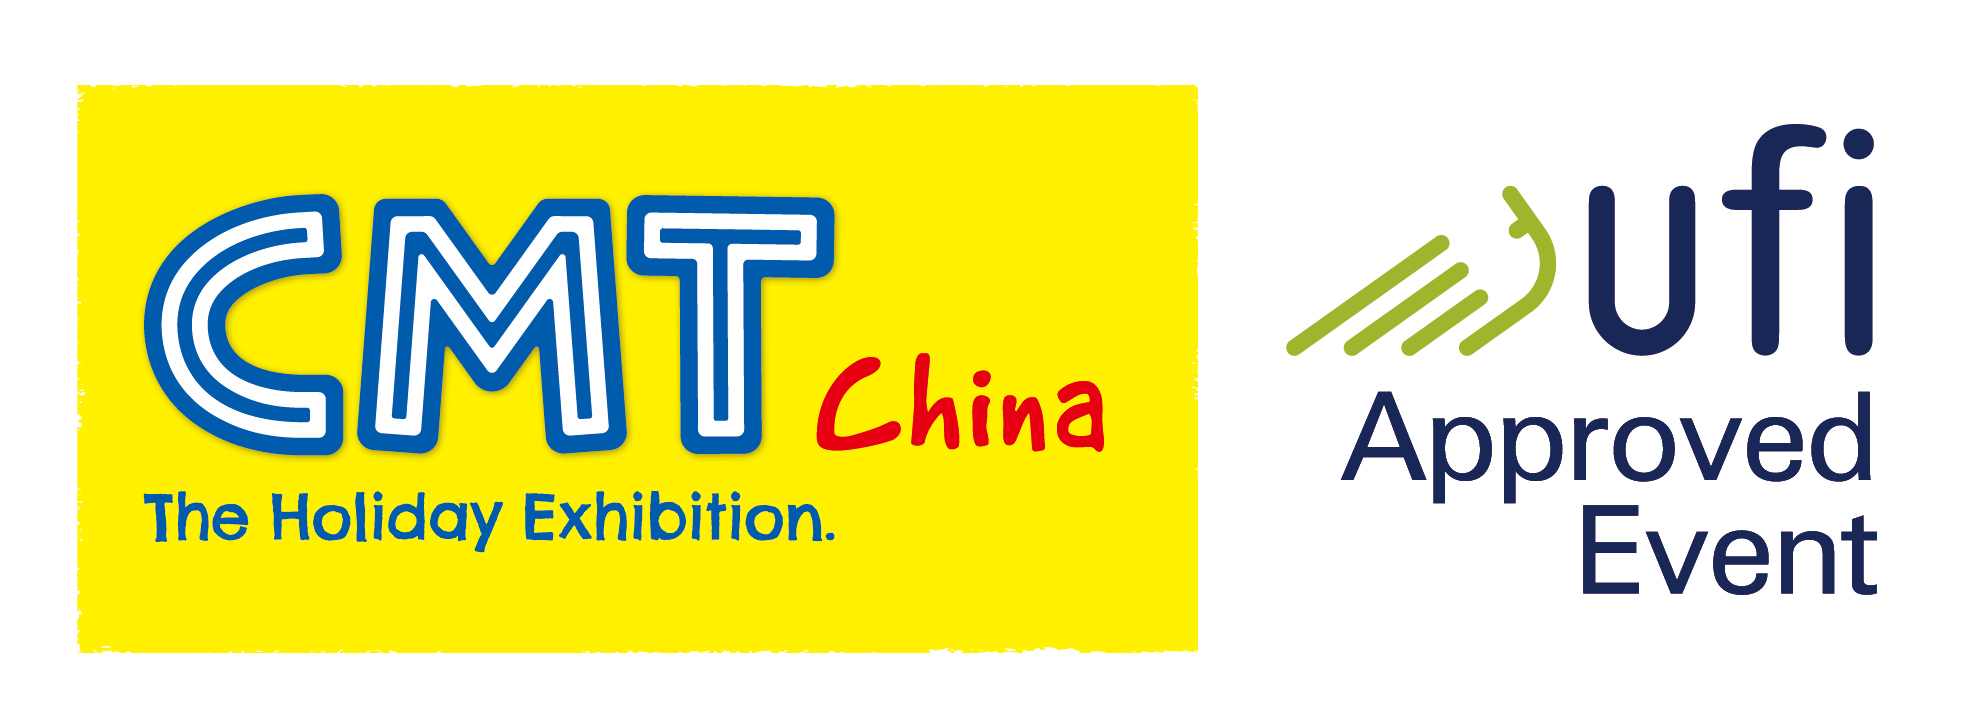 2020南京国际度假休闲及房车展览会 CMT China 2020.jpg